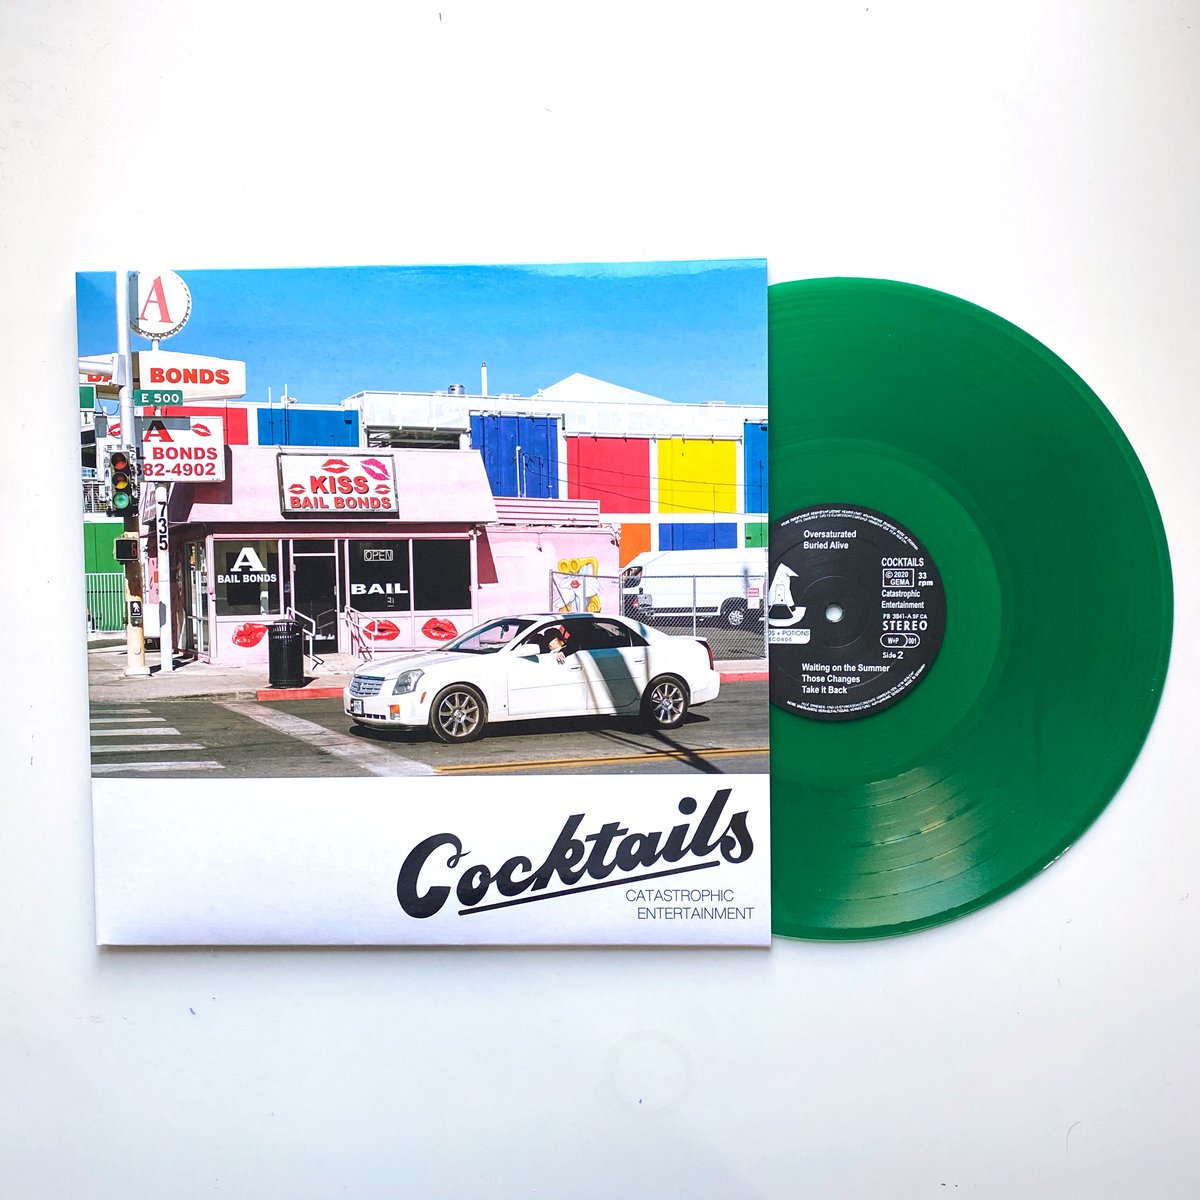 Cocktails - Catastrophic Entertainment LP - Limited GREEN vinyl